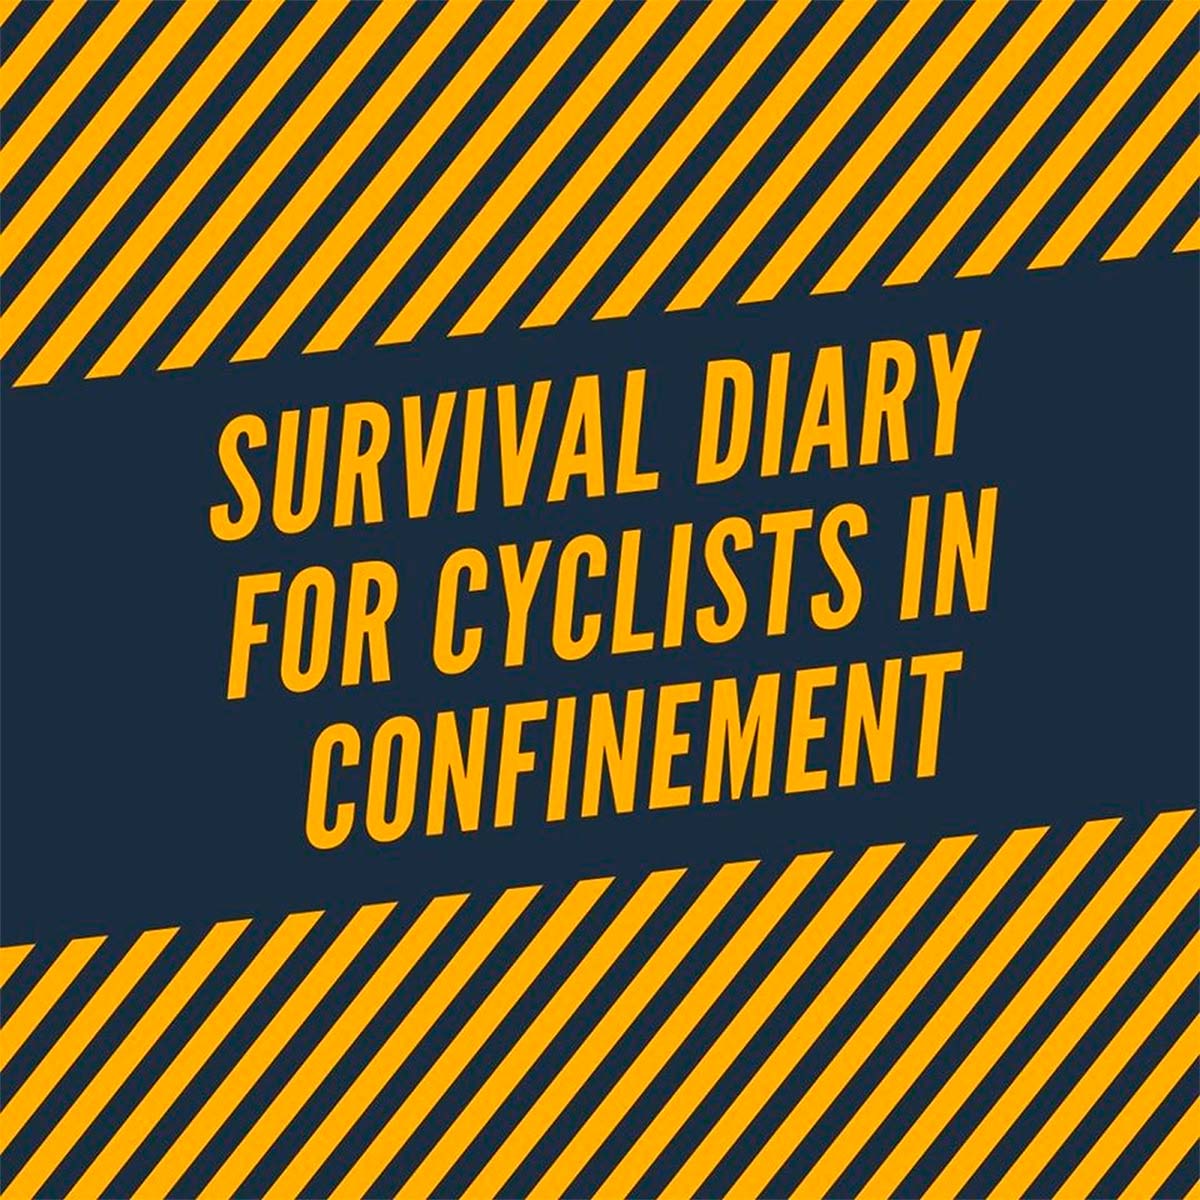 'Diario de supervivencia para ciclistas en confinamiento', la nueva sección de entretenimiento de Santafixie